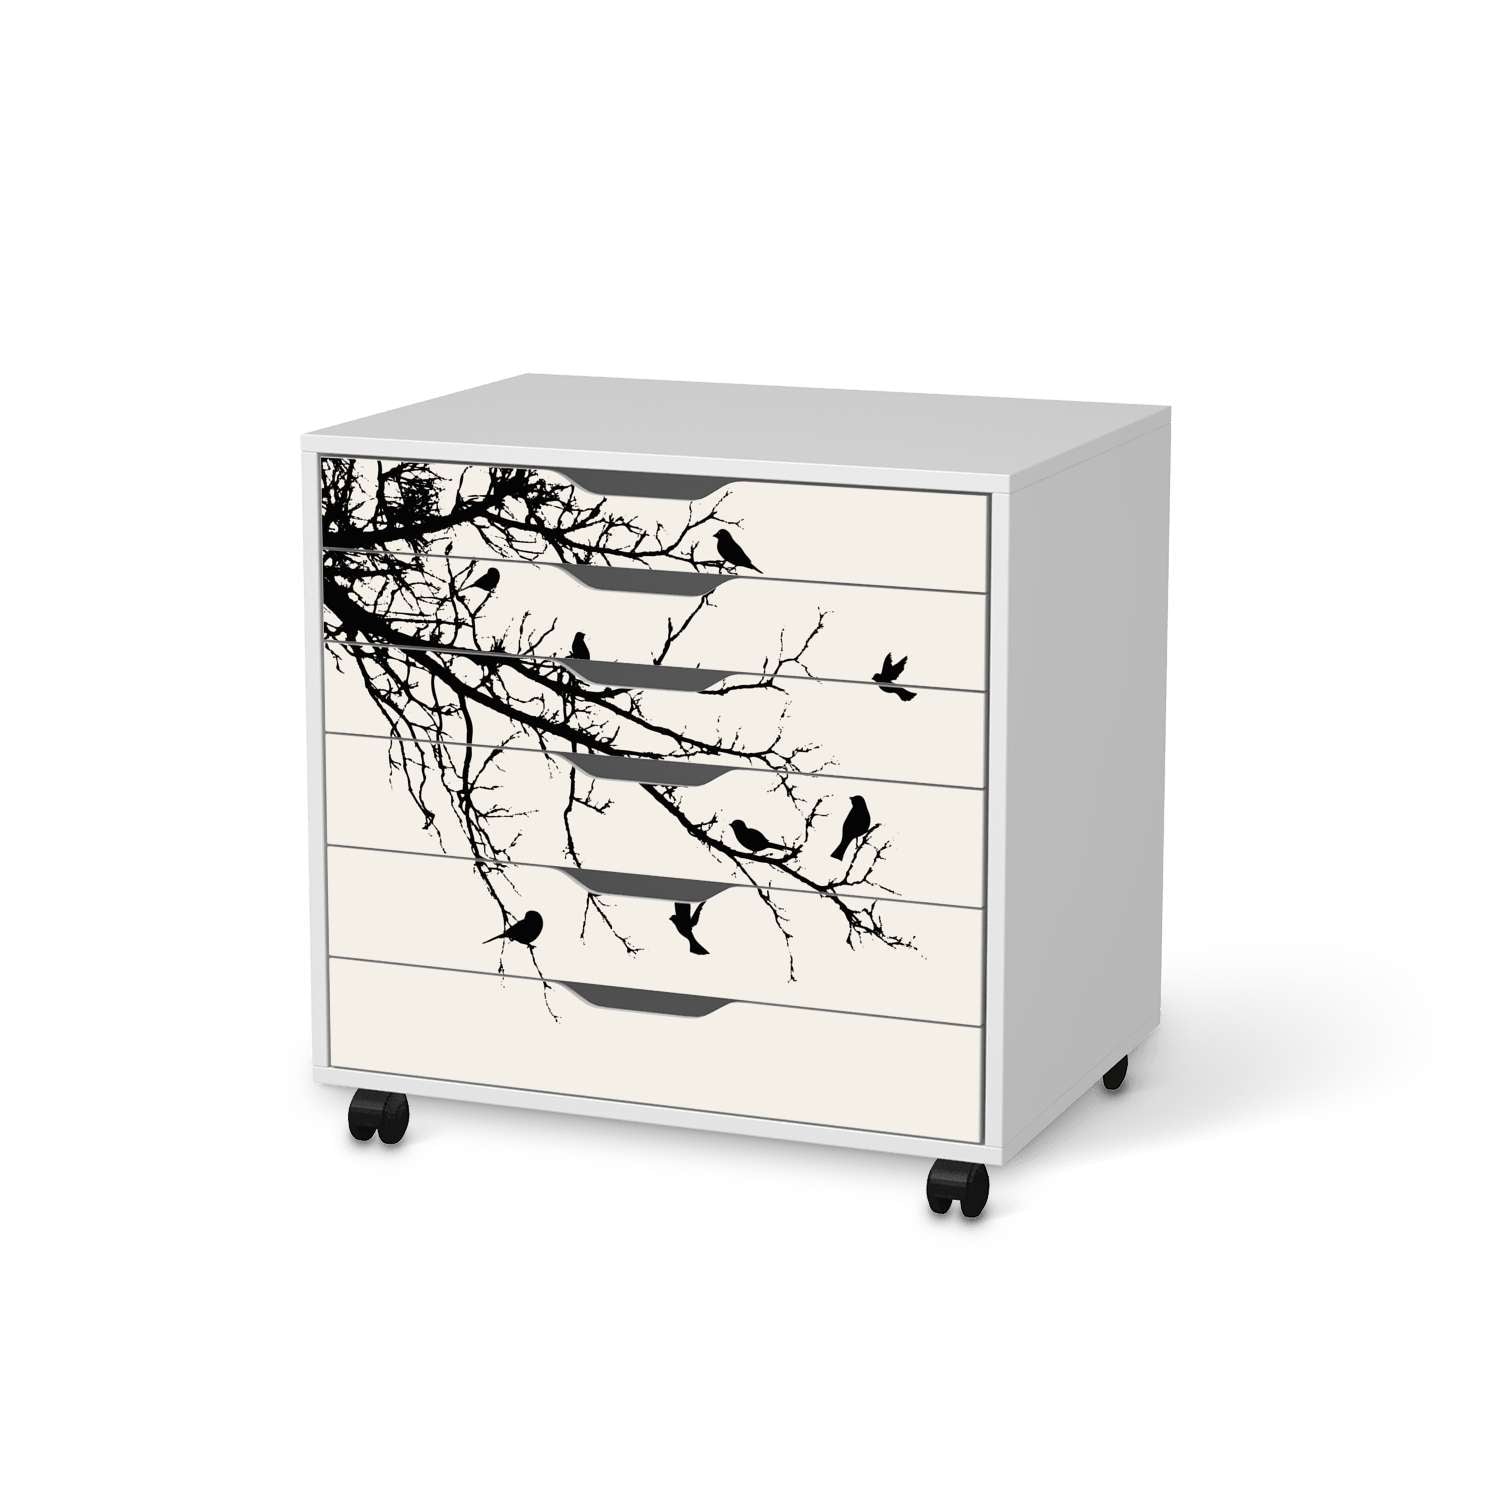 M?belfolie IKEA Alex Rollcontainer 6 Schubladen - Design: Tree and Birds 1 von creatisto